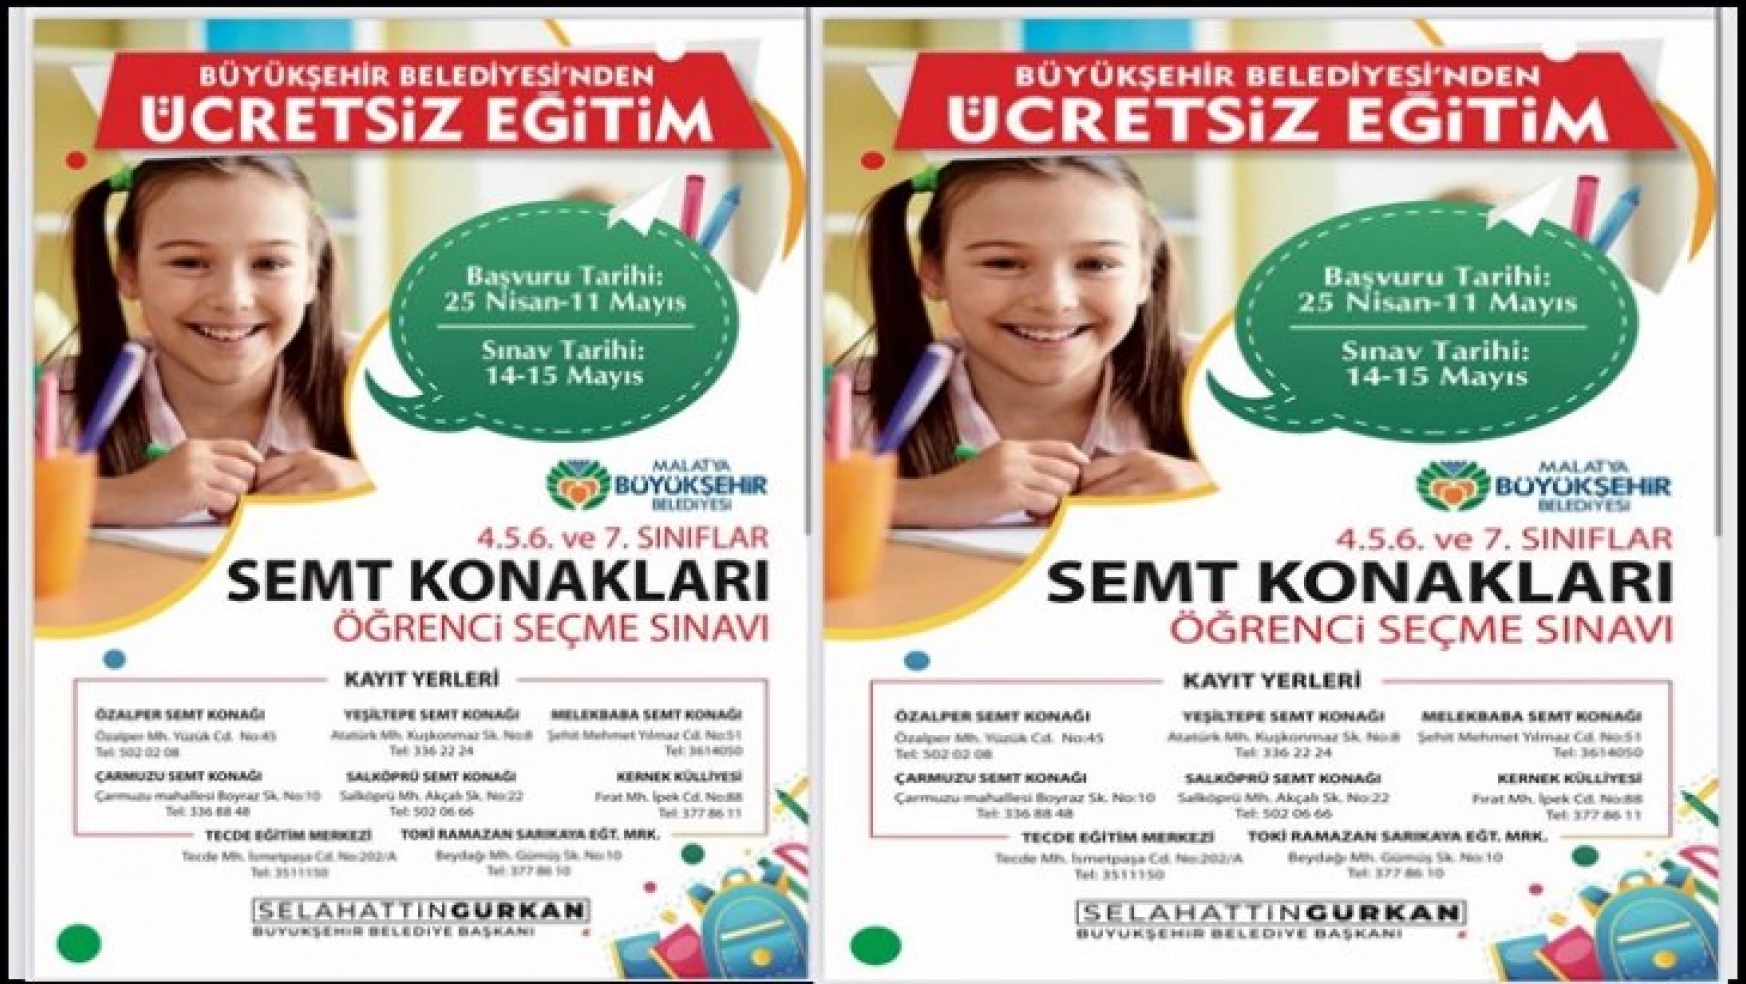 Malatya Büyükşehir Belediyesi'nden Ücretsiz Eğitim Desteği